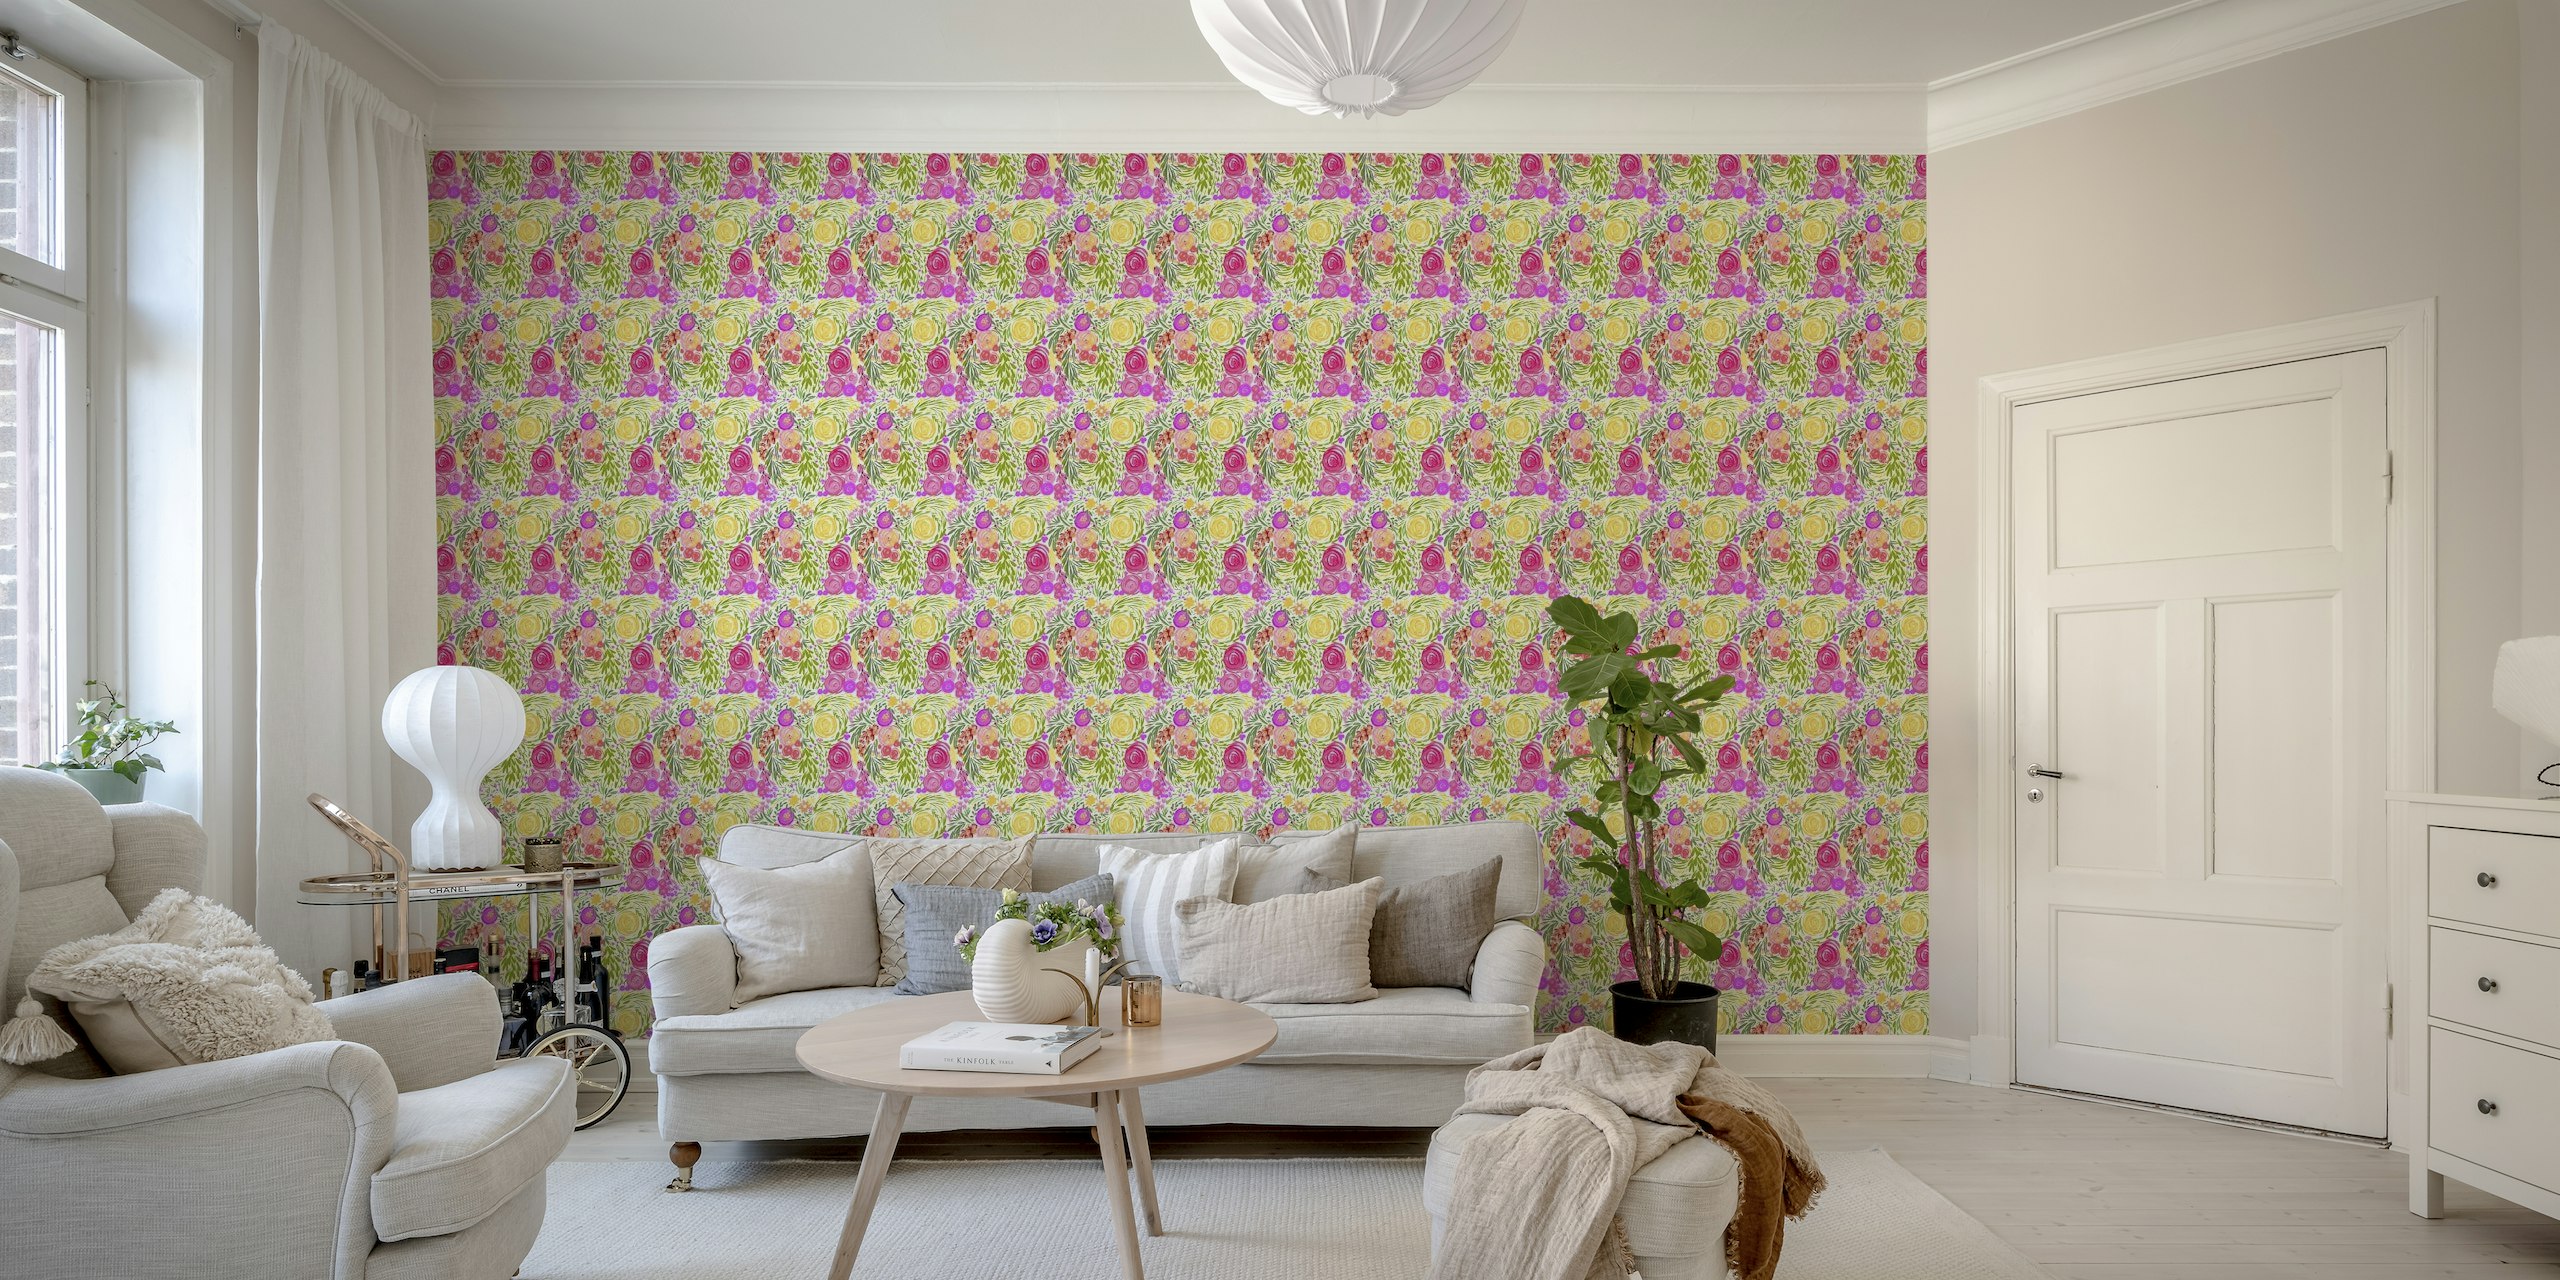 The Pink Garden wallpaper